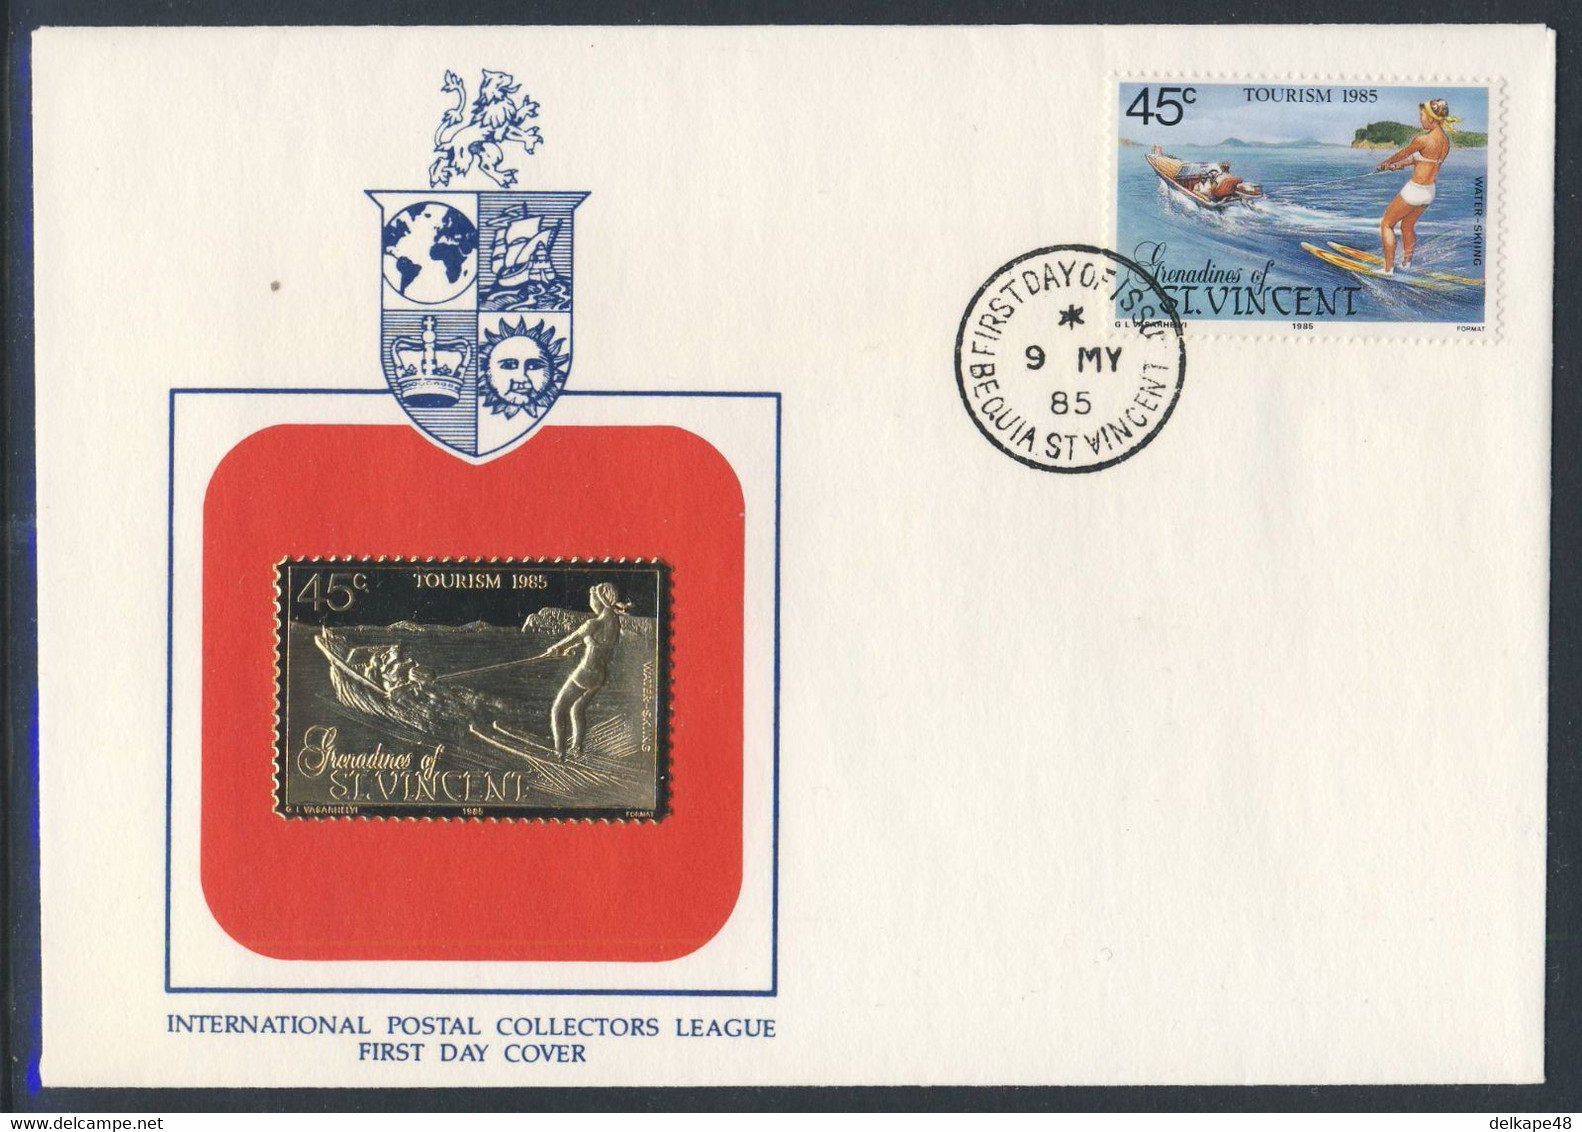 Grenadines Of St. Vincent 1985 FDC Mi 398 SG 387 - Golden Stamp - Water-skiing / Wasserskifahren / - Wasserski